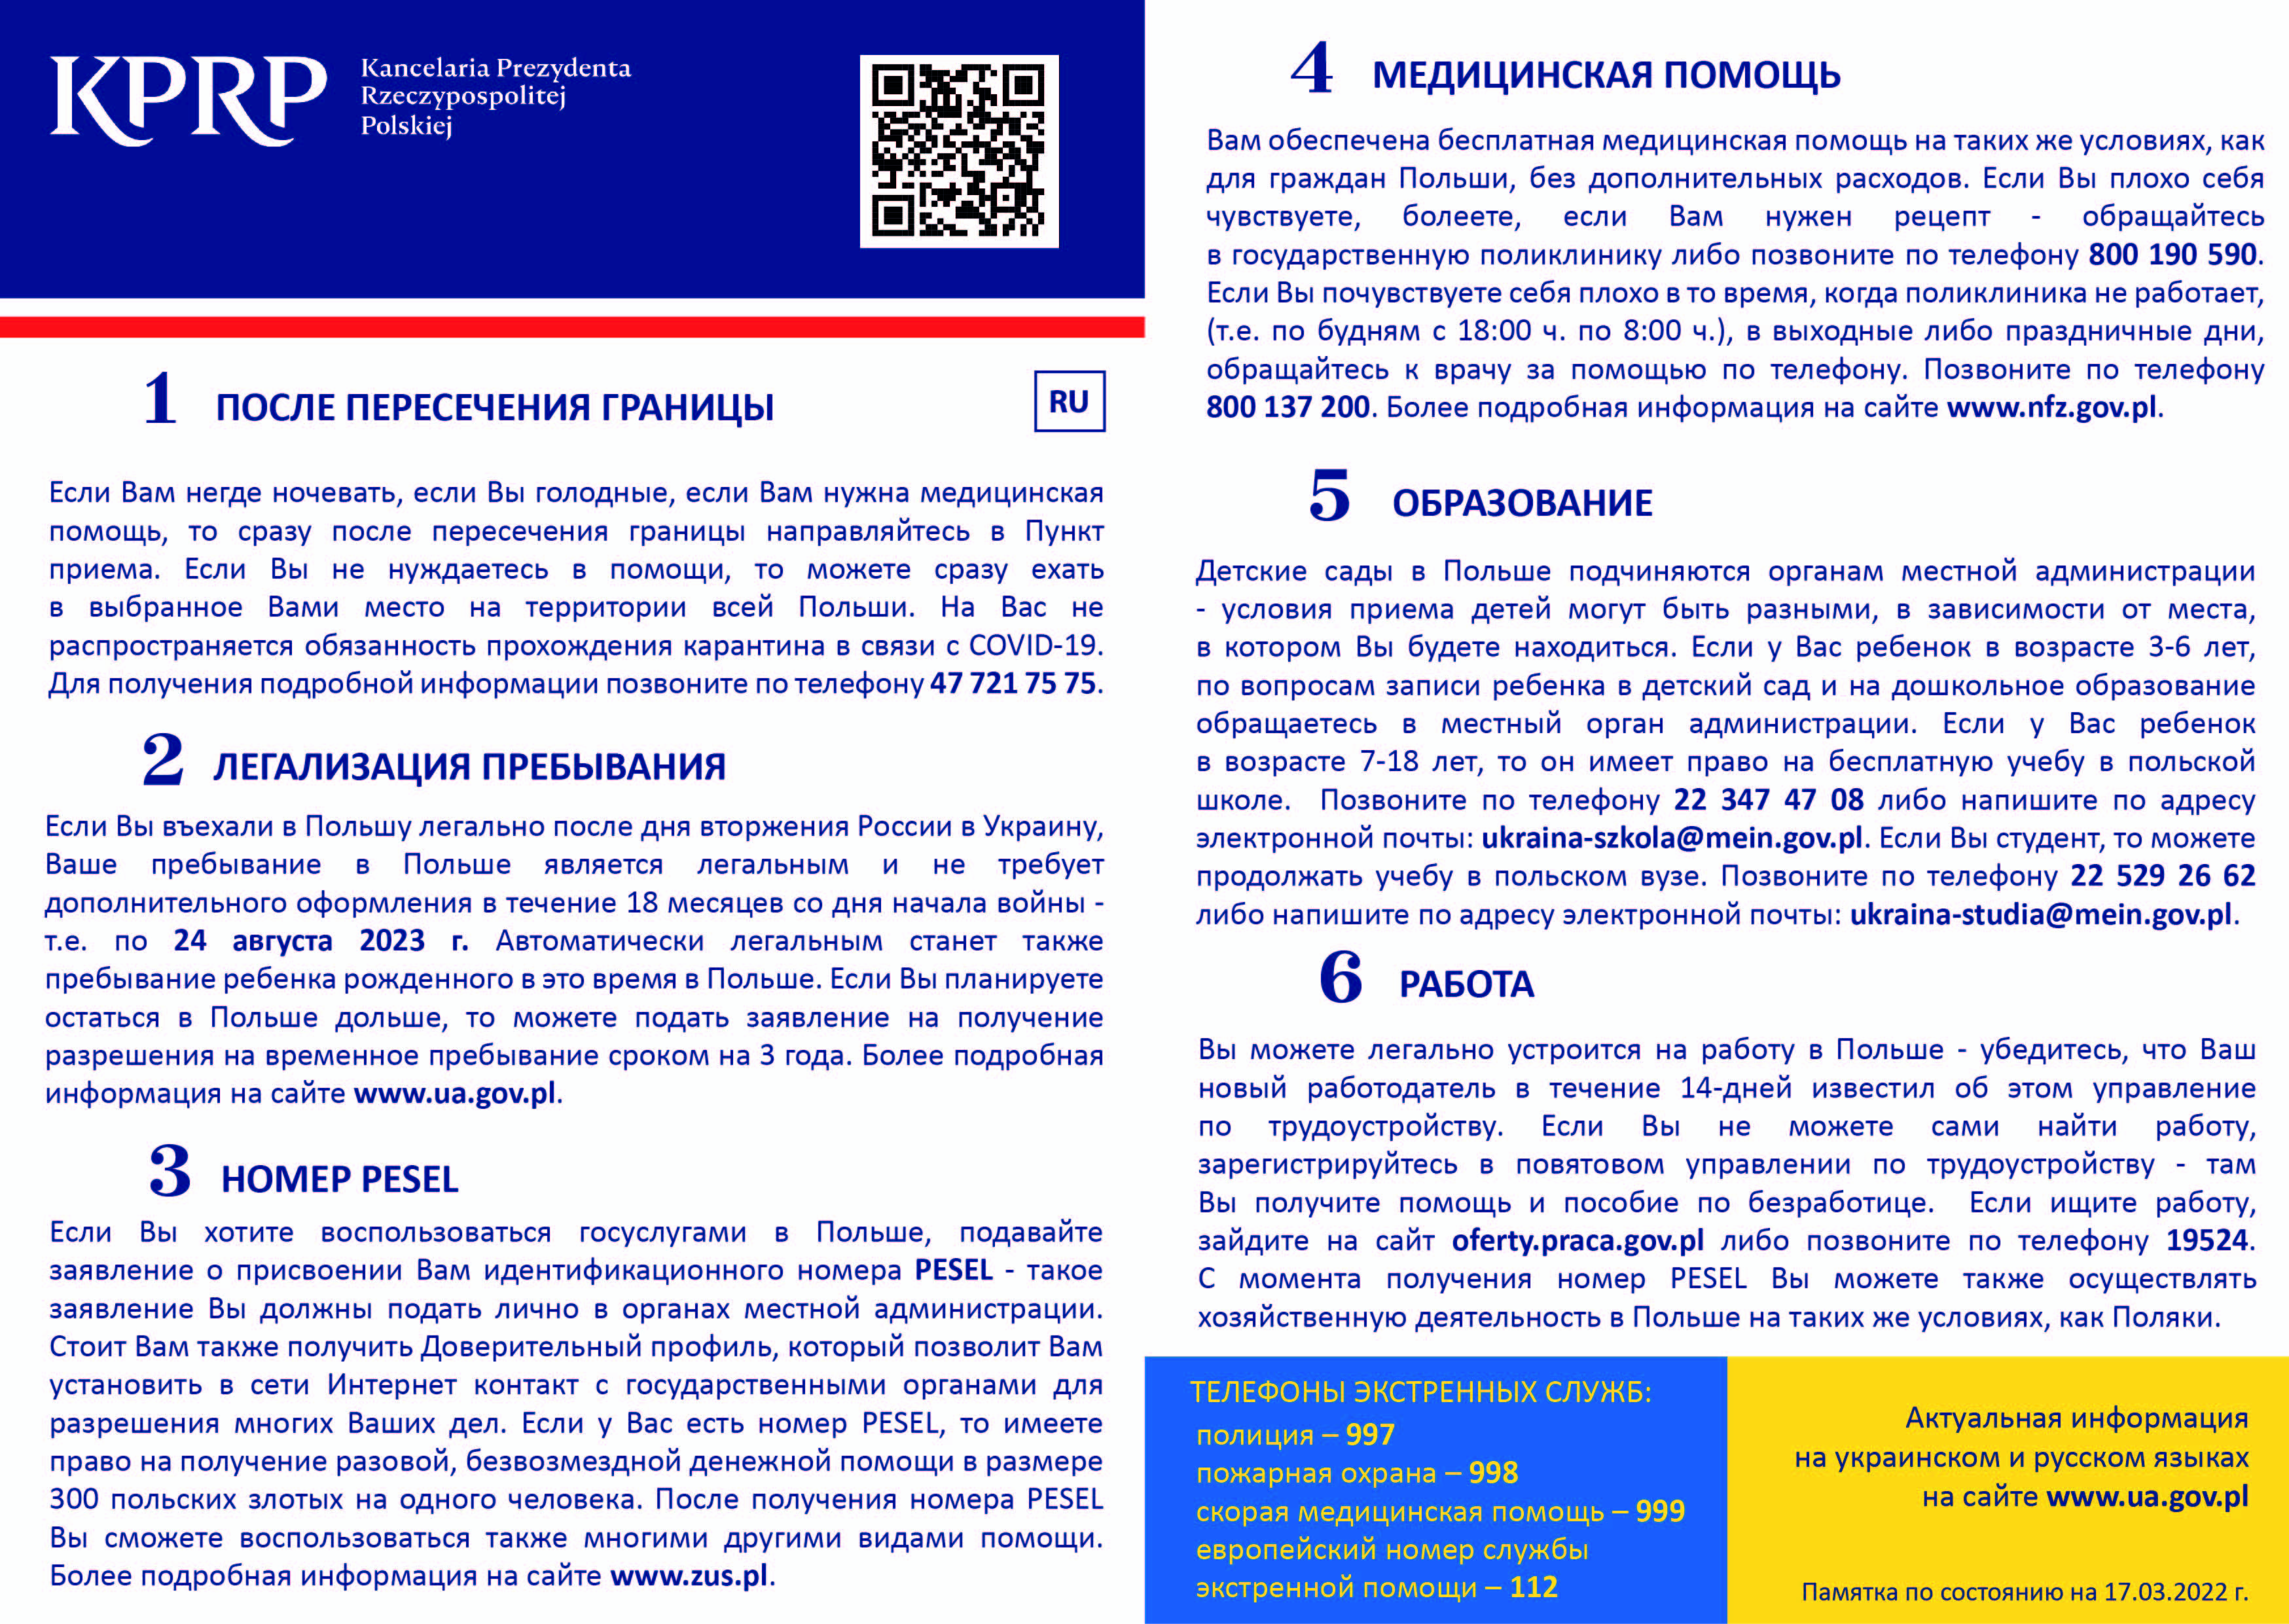 Ulotka dla uchodźców z Ukrainy w języku rosyjskim informująca co zrobić po przekroczeniu granicy, jak uzyskać numer PESEL, o legalności pobytu w Polsce, o opiece medycznej, edukacji dzieci oraz o możliwości podjęcia pracy